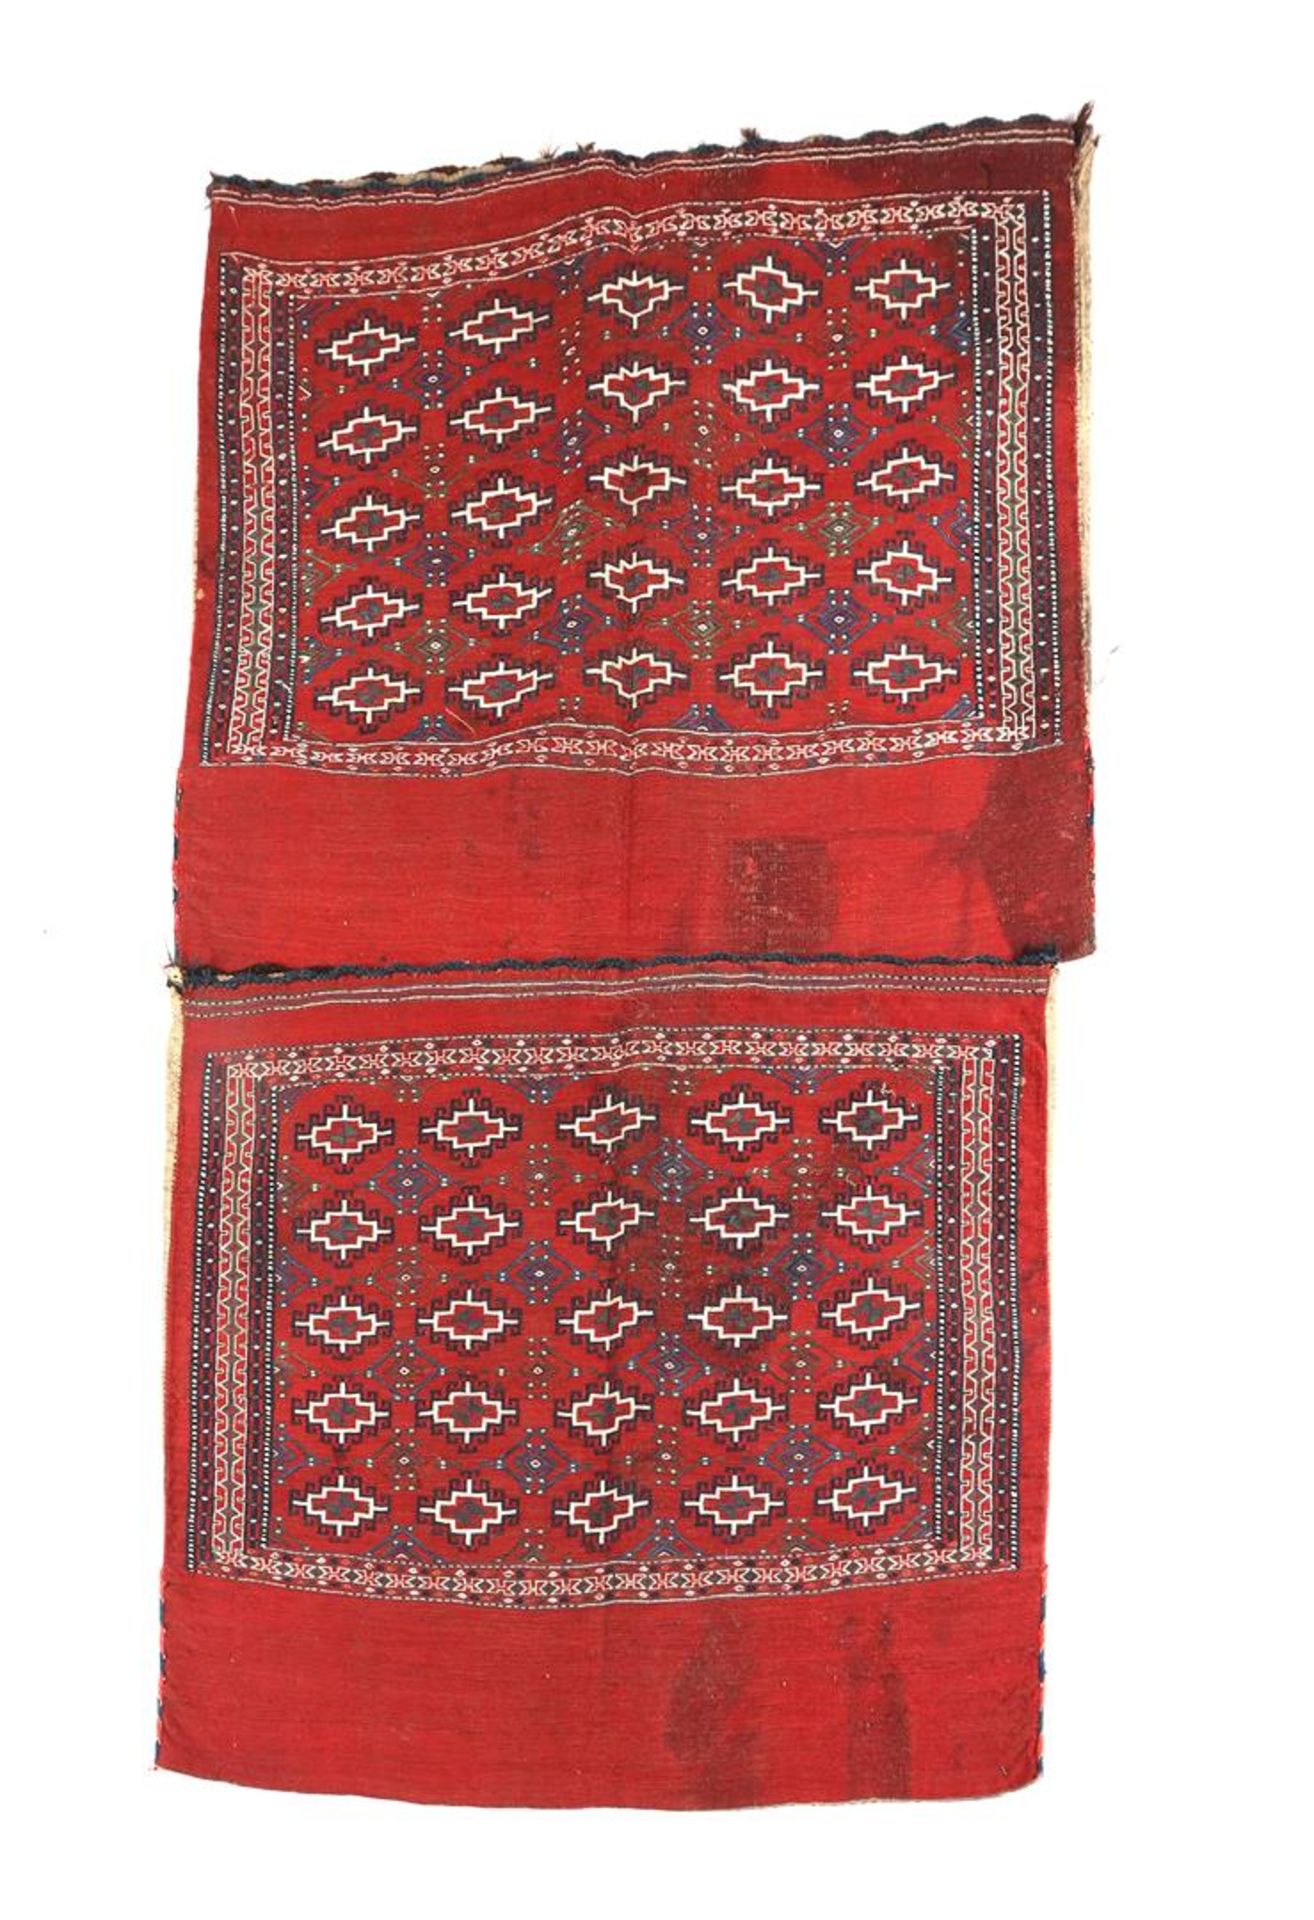 2 Persian cushions, Soumak